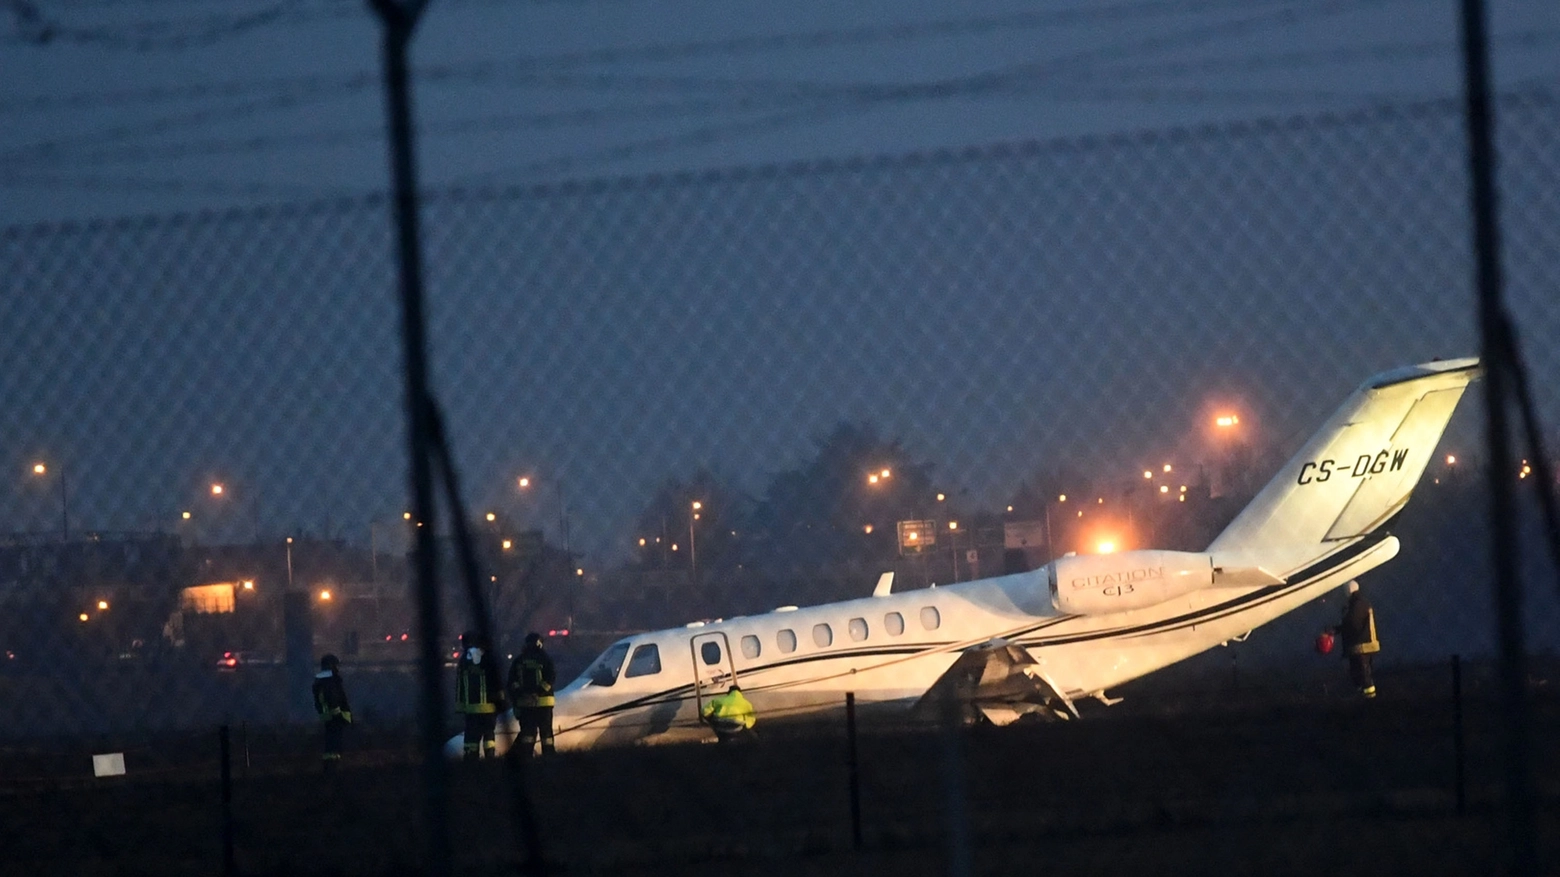 Aeroporto di Bologna, l'aereo finito fuori pista (foto Schicchi)